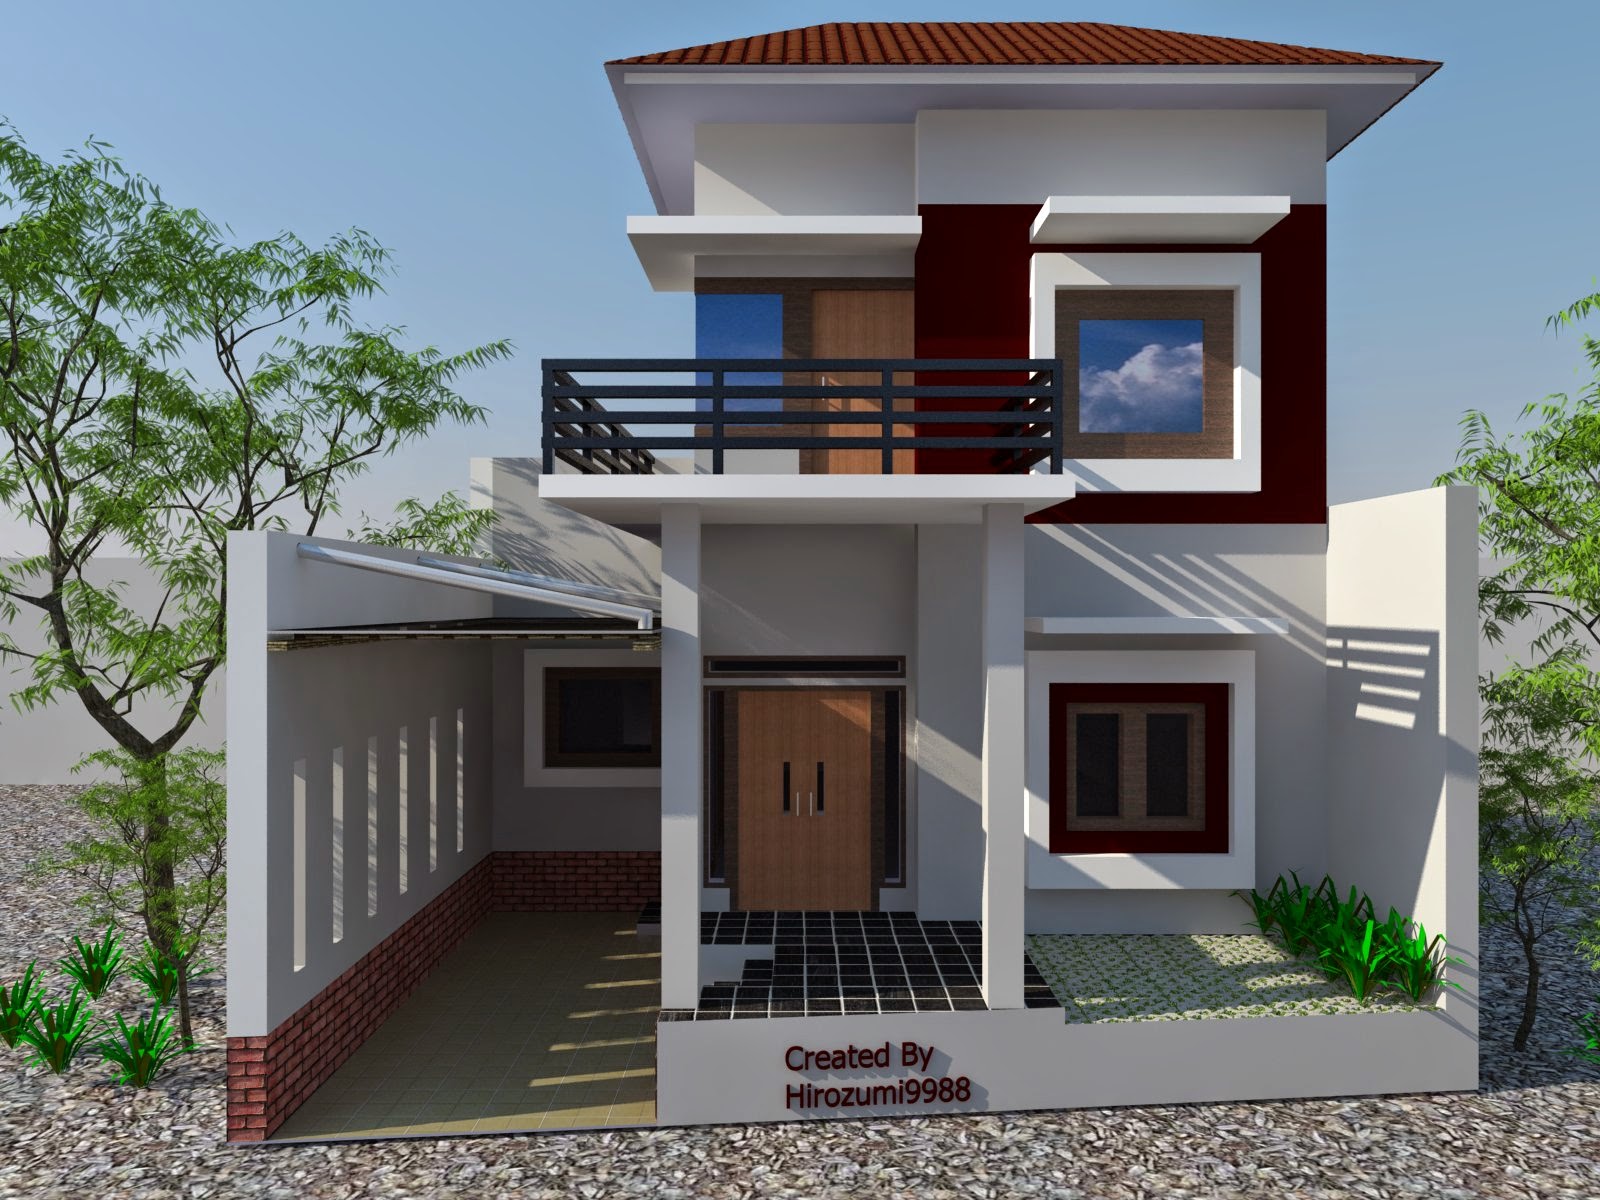 61 Desain Rumah Minimalis 2 Lantai Dan Harganya Desain Rumah Minimalis Terbaru